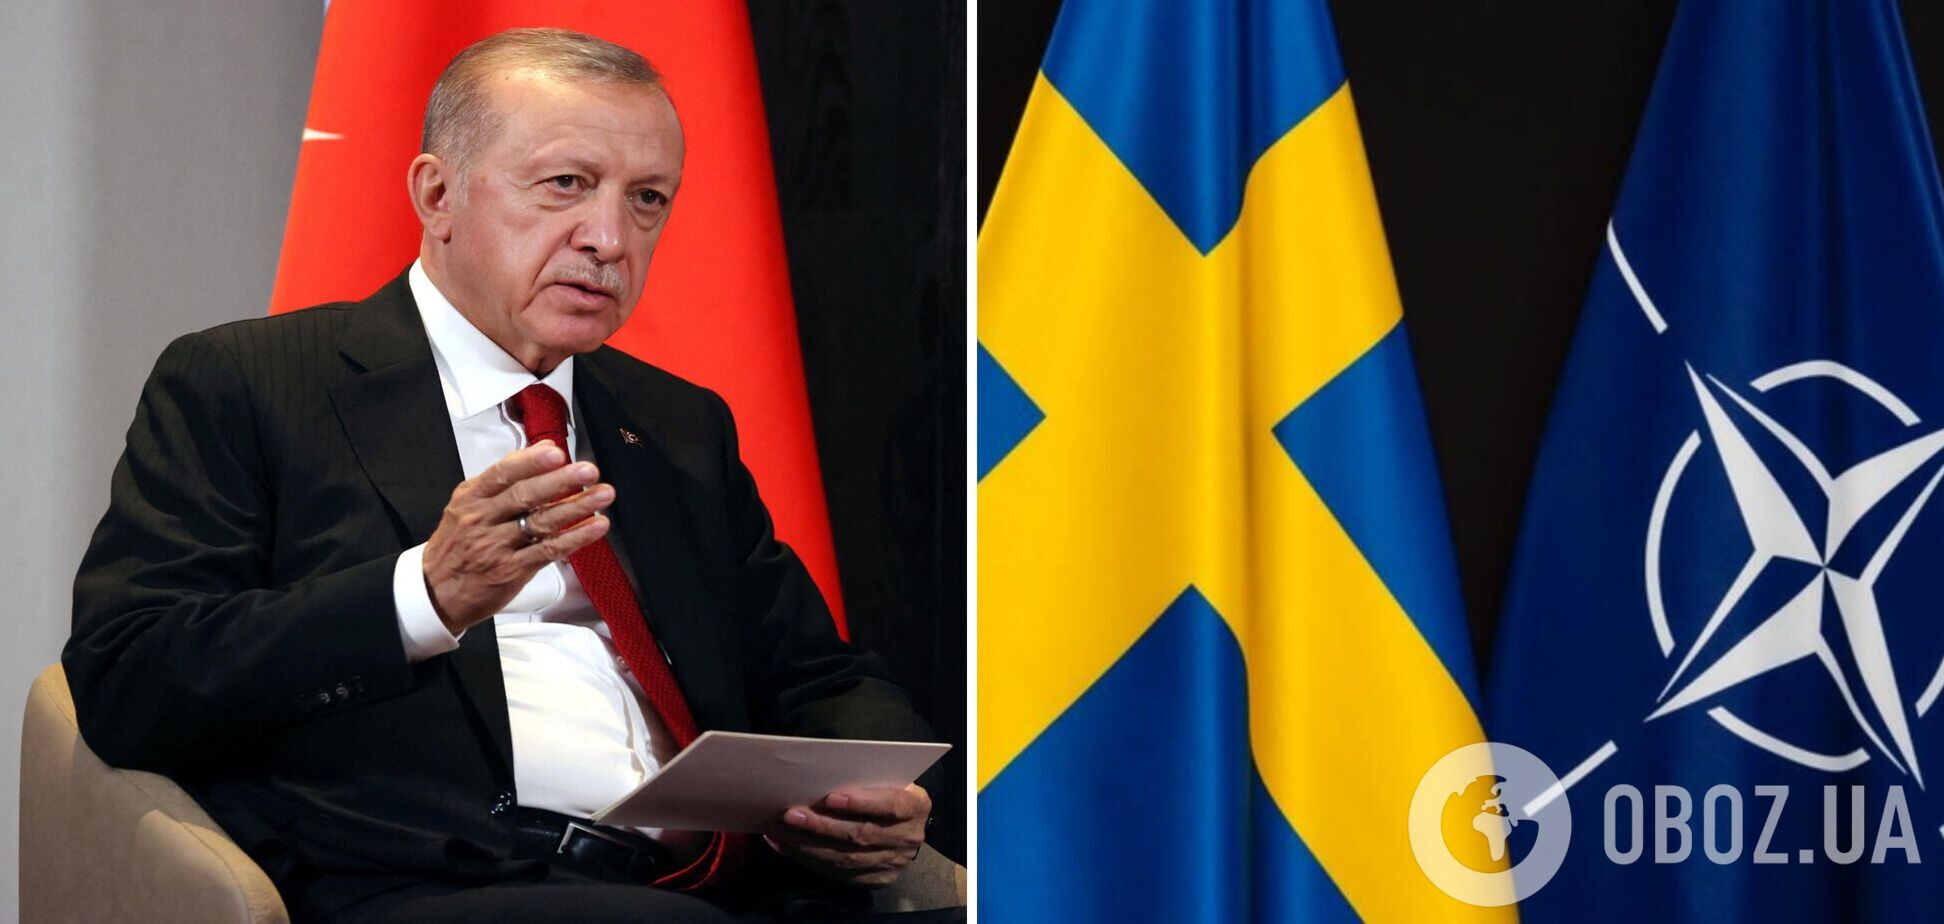 Эрдоган заявил, что он не готов поддержать членство Швеции в НАТО, и назвал причину